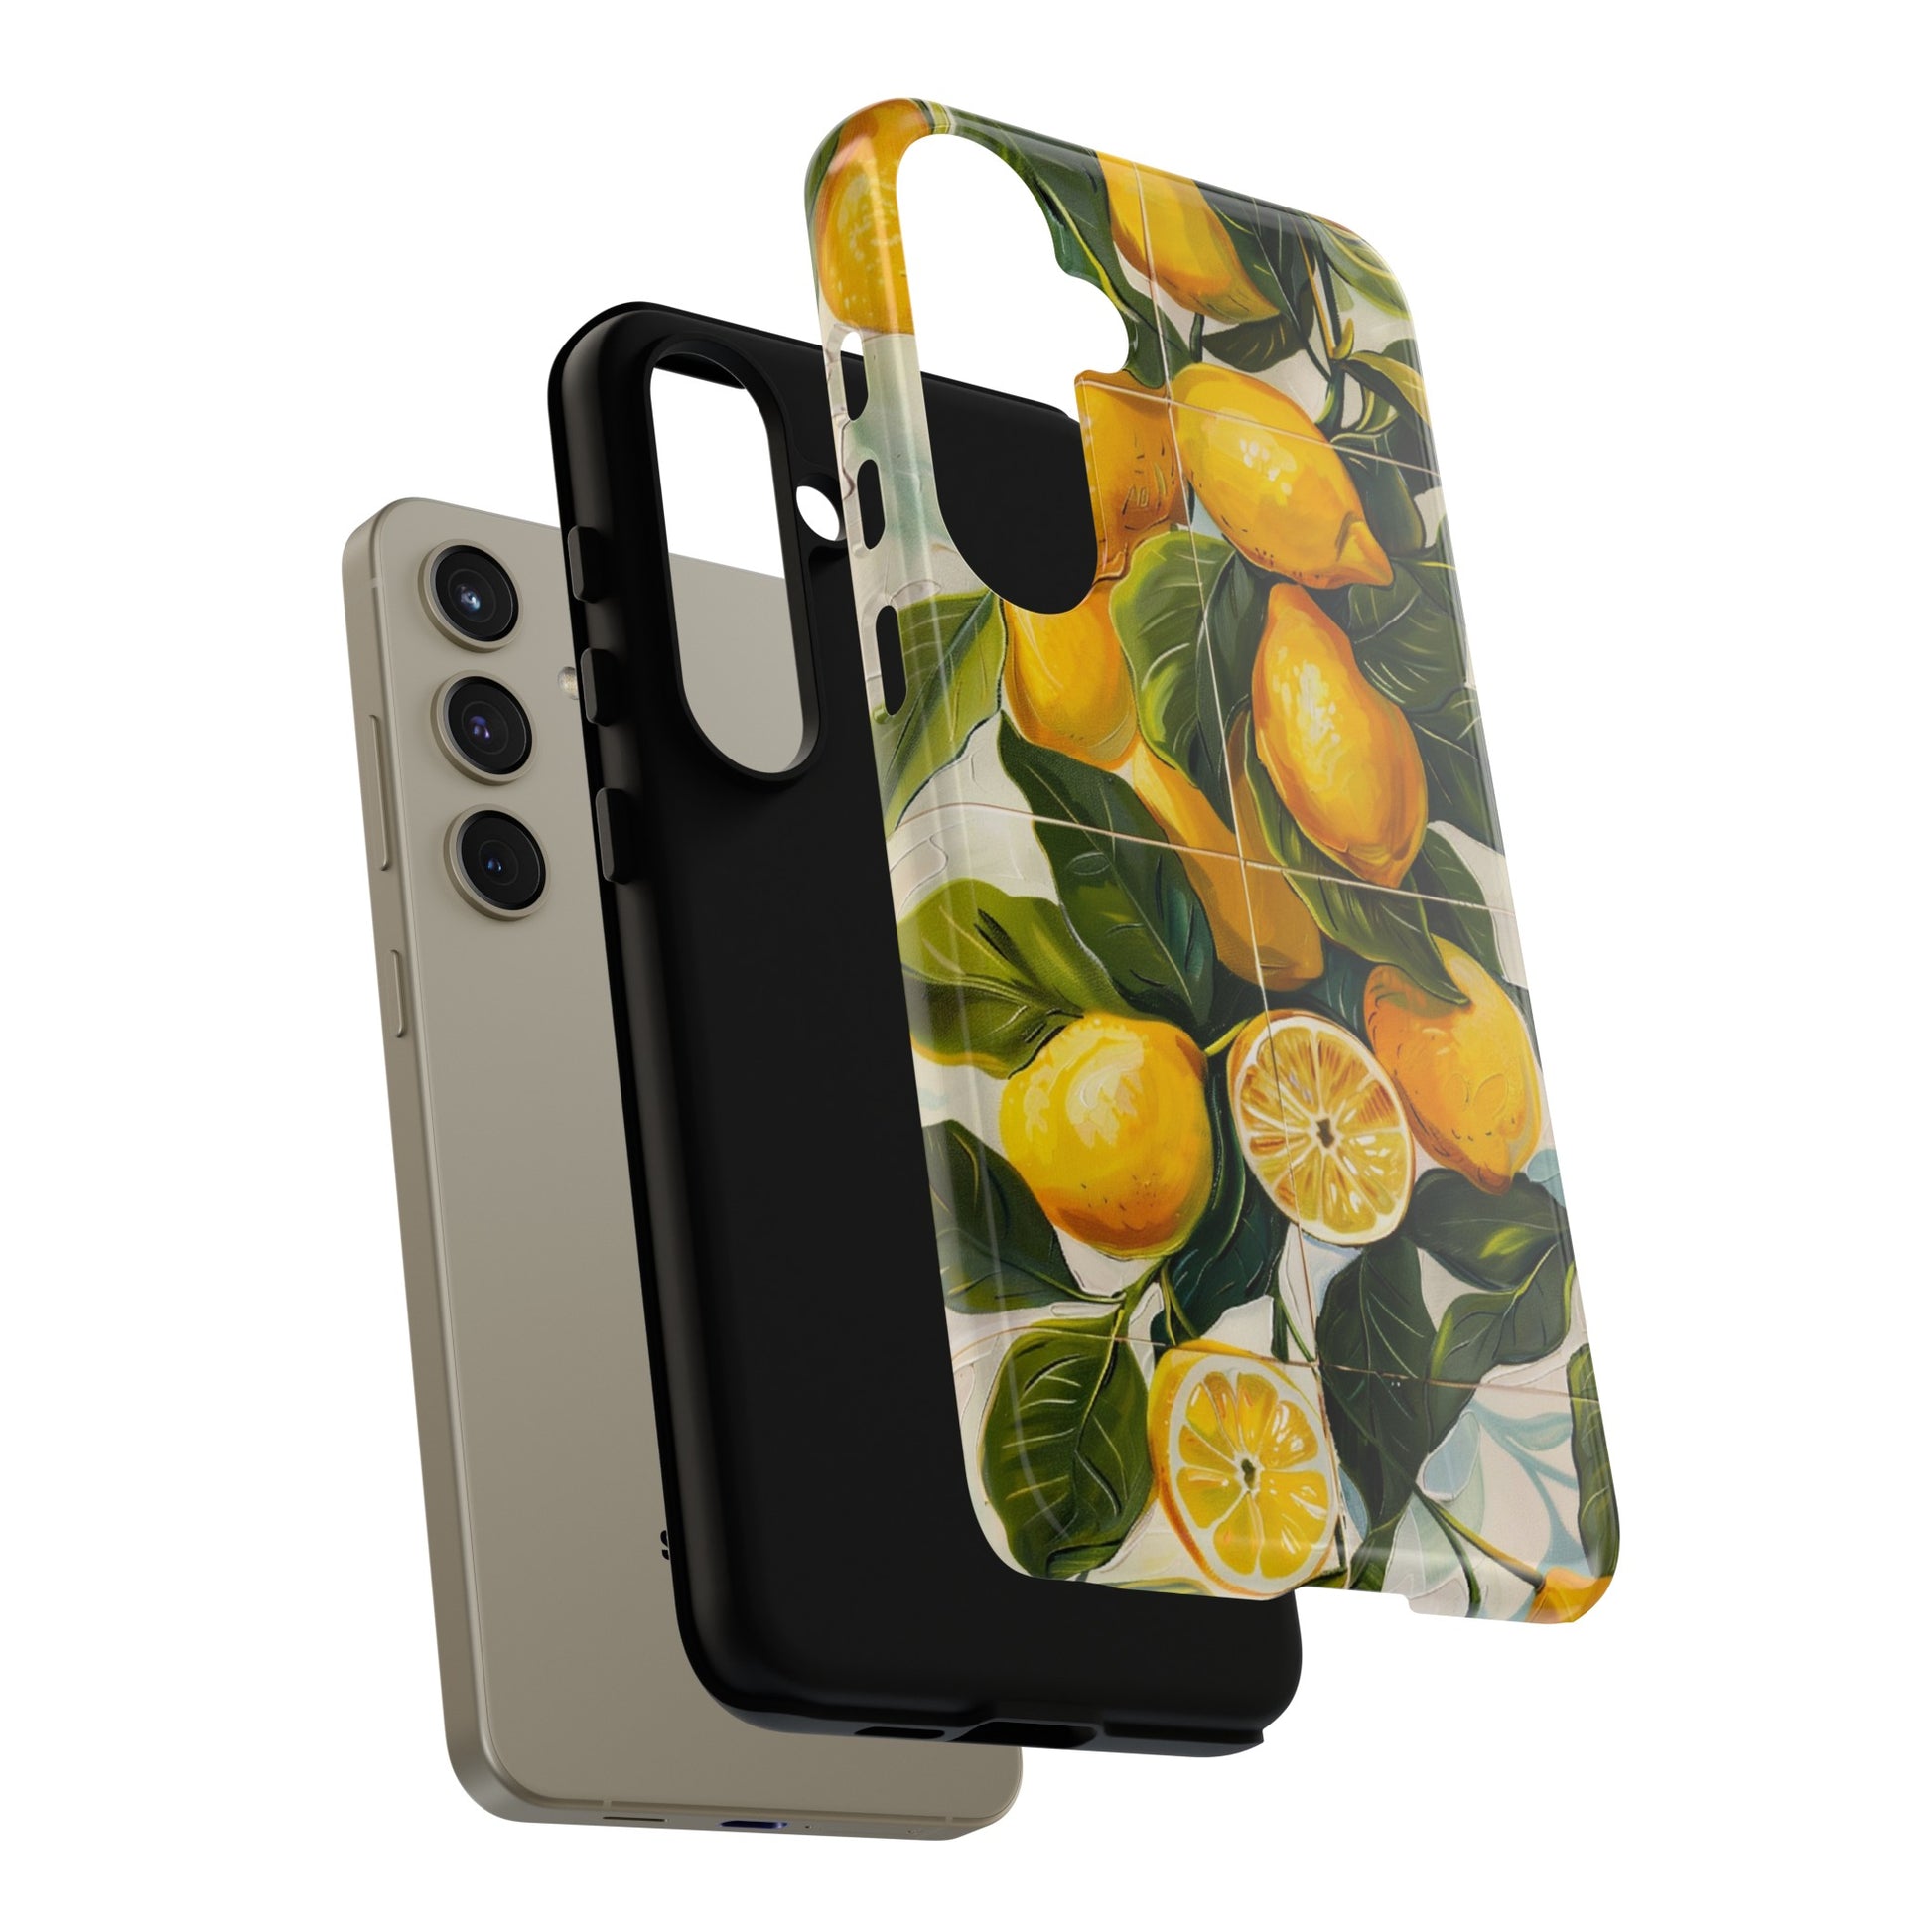 iPhone XR cases with lemon tile art case